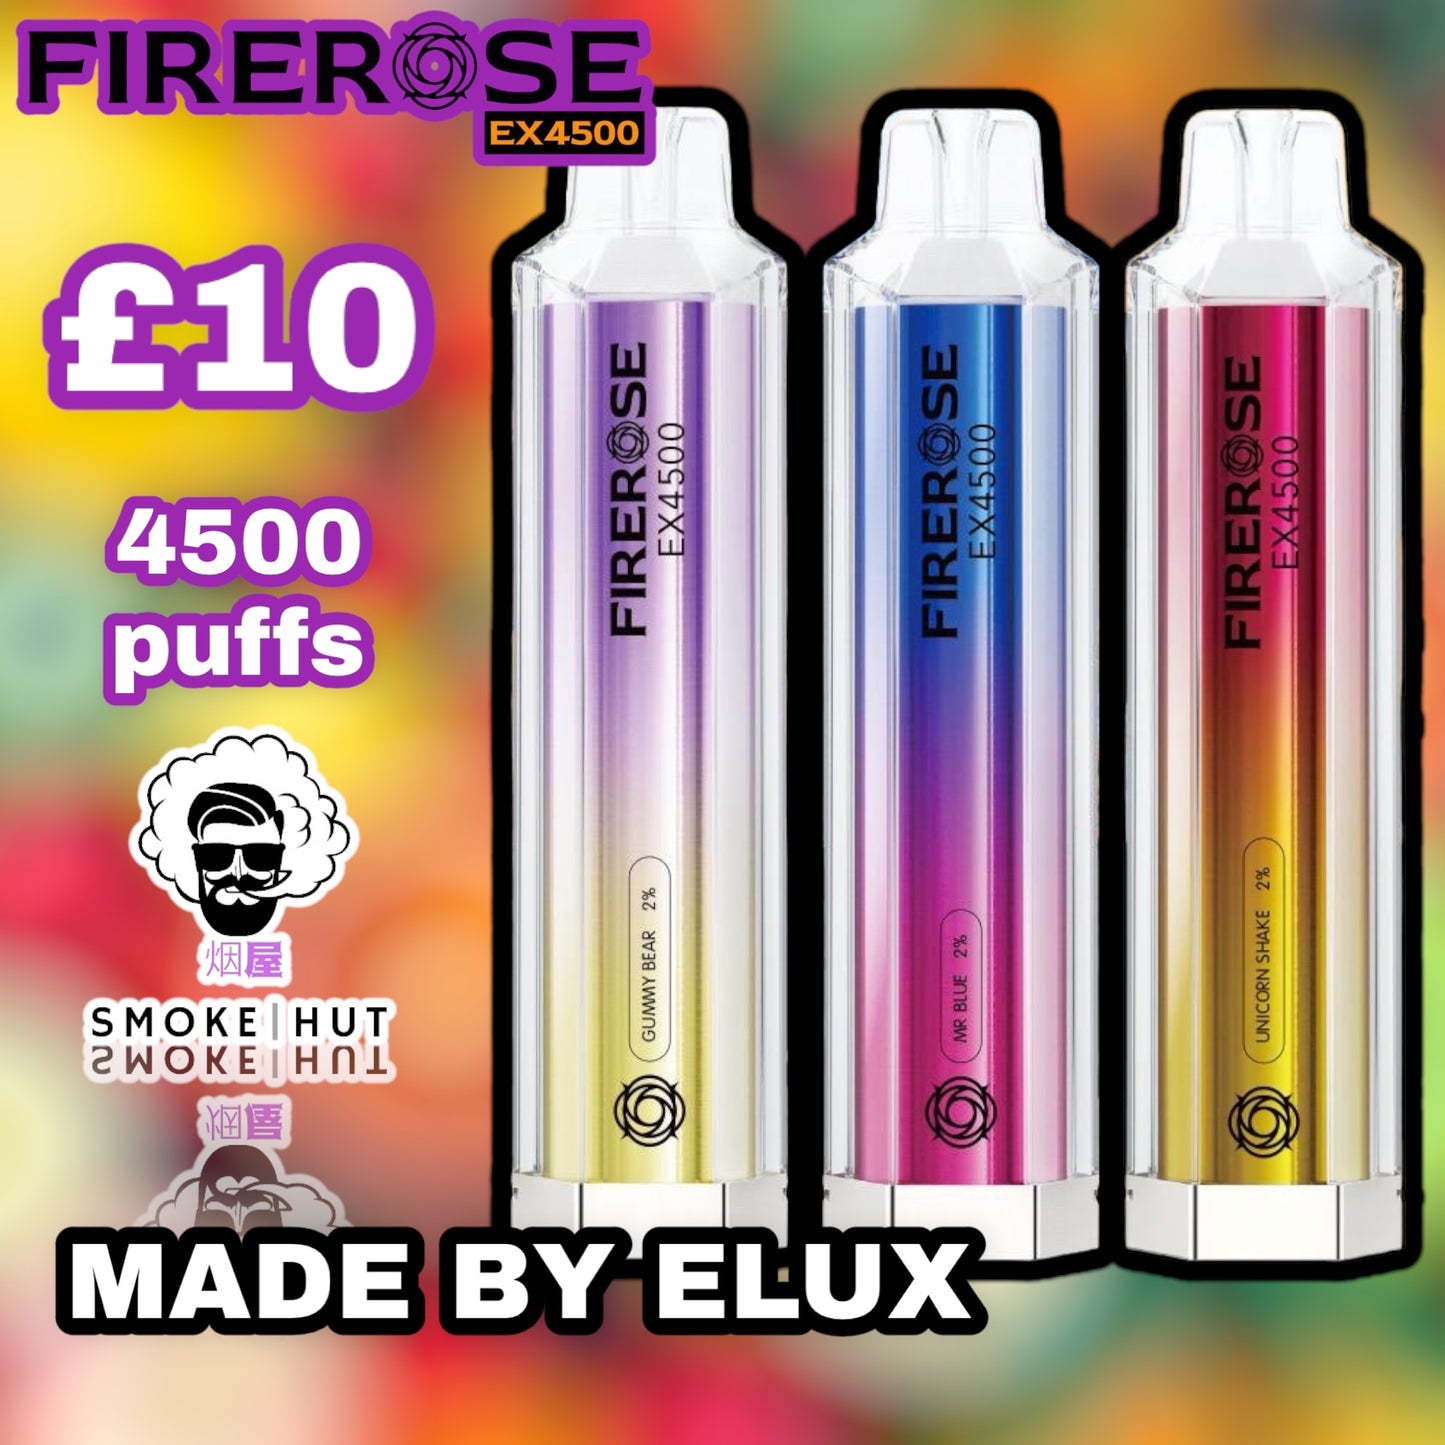 FIREROSE 4500 MADE BY ELUX – Smoke Hut Uk